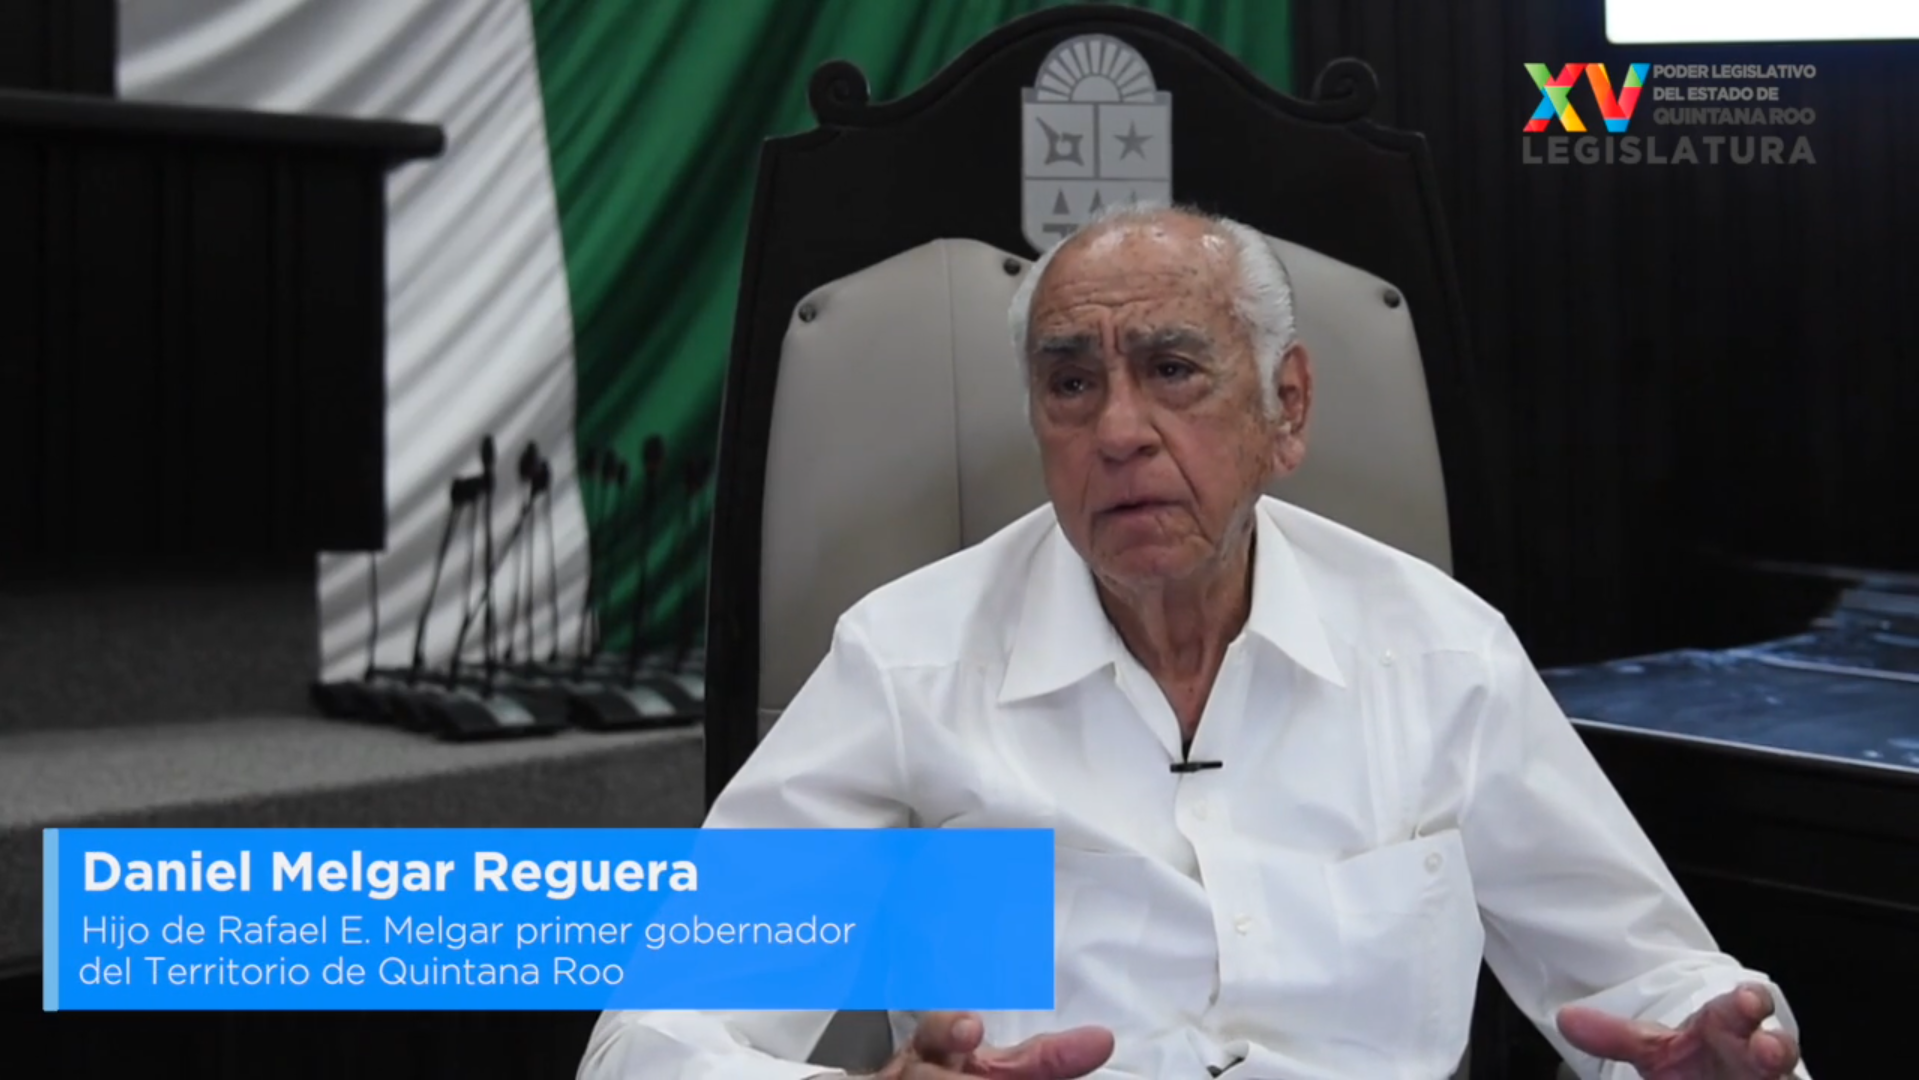 Daniel Melgar Reguera, hijo del gobernador del Territorio de Quintana Roo en 1935, recibió este reconocimiento de los quintanarroenses.